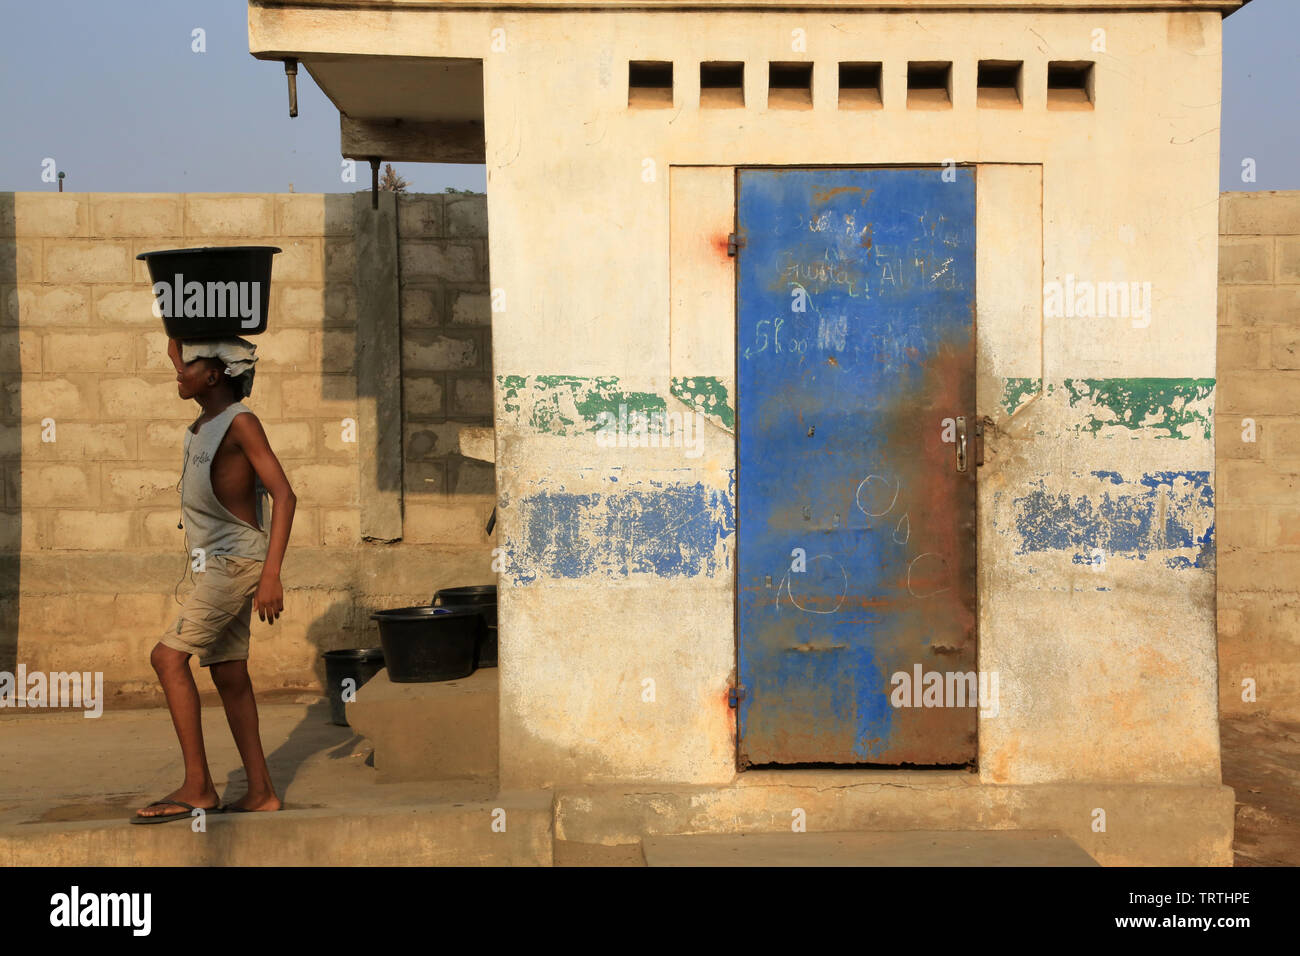 Gli africani ottenere acqua con una benna. La convenzione di Lomé. Il Togo. Afrique de l'Ouest. Foto Stock